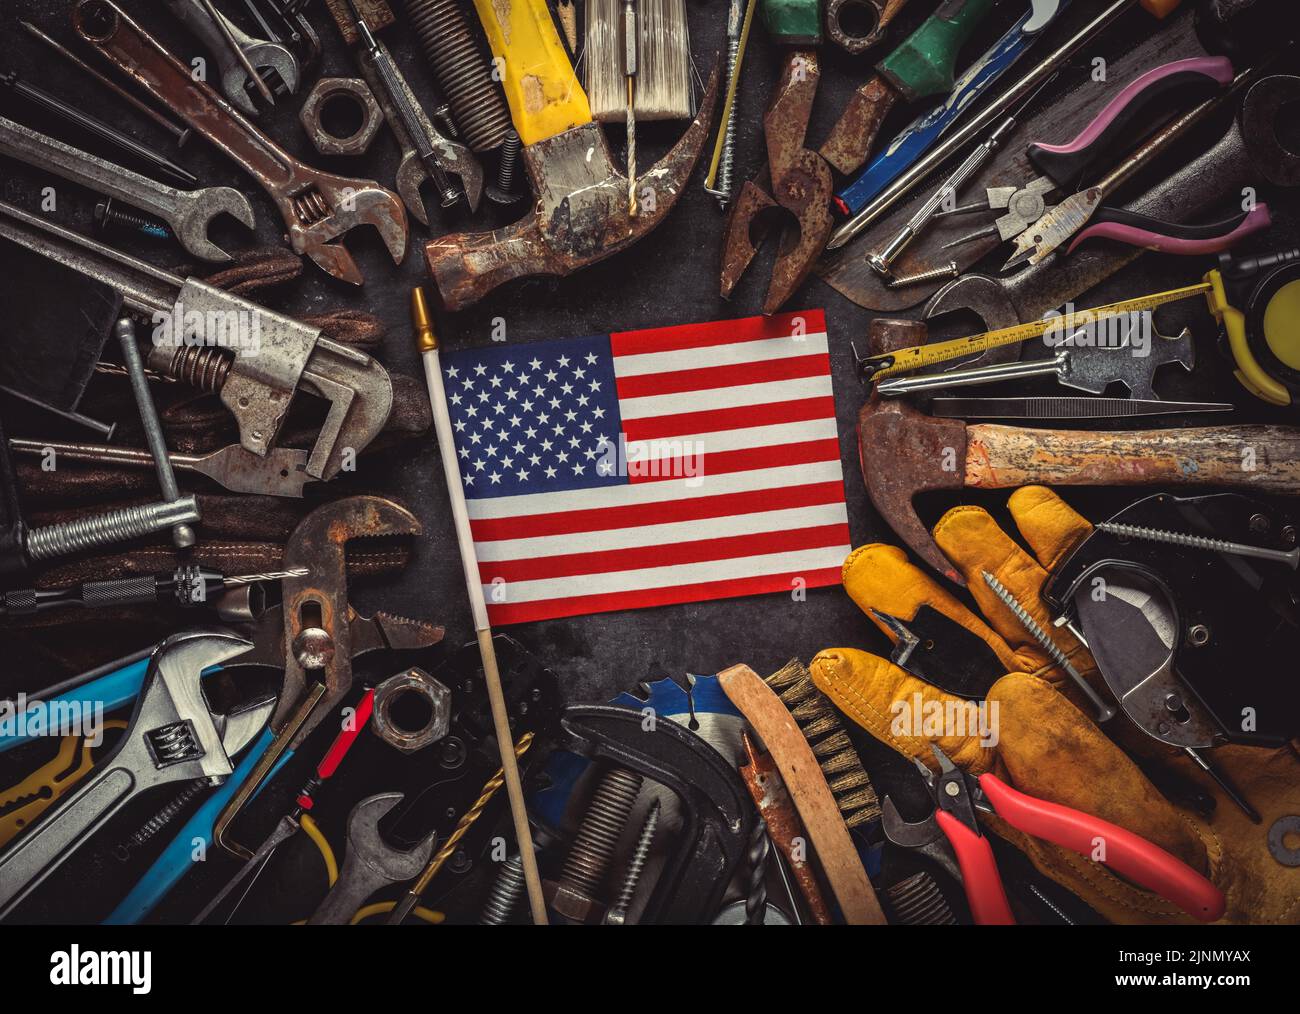 Patriotische Sammlung abgenutzter und gebrauchter Arbeitswerkzeuge mit kleiner US-amerikanischer Flagge. Made in USA, American Workforce oder Labor Day Concept. Stockfoto